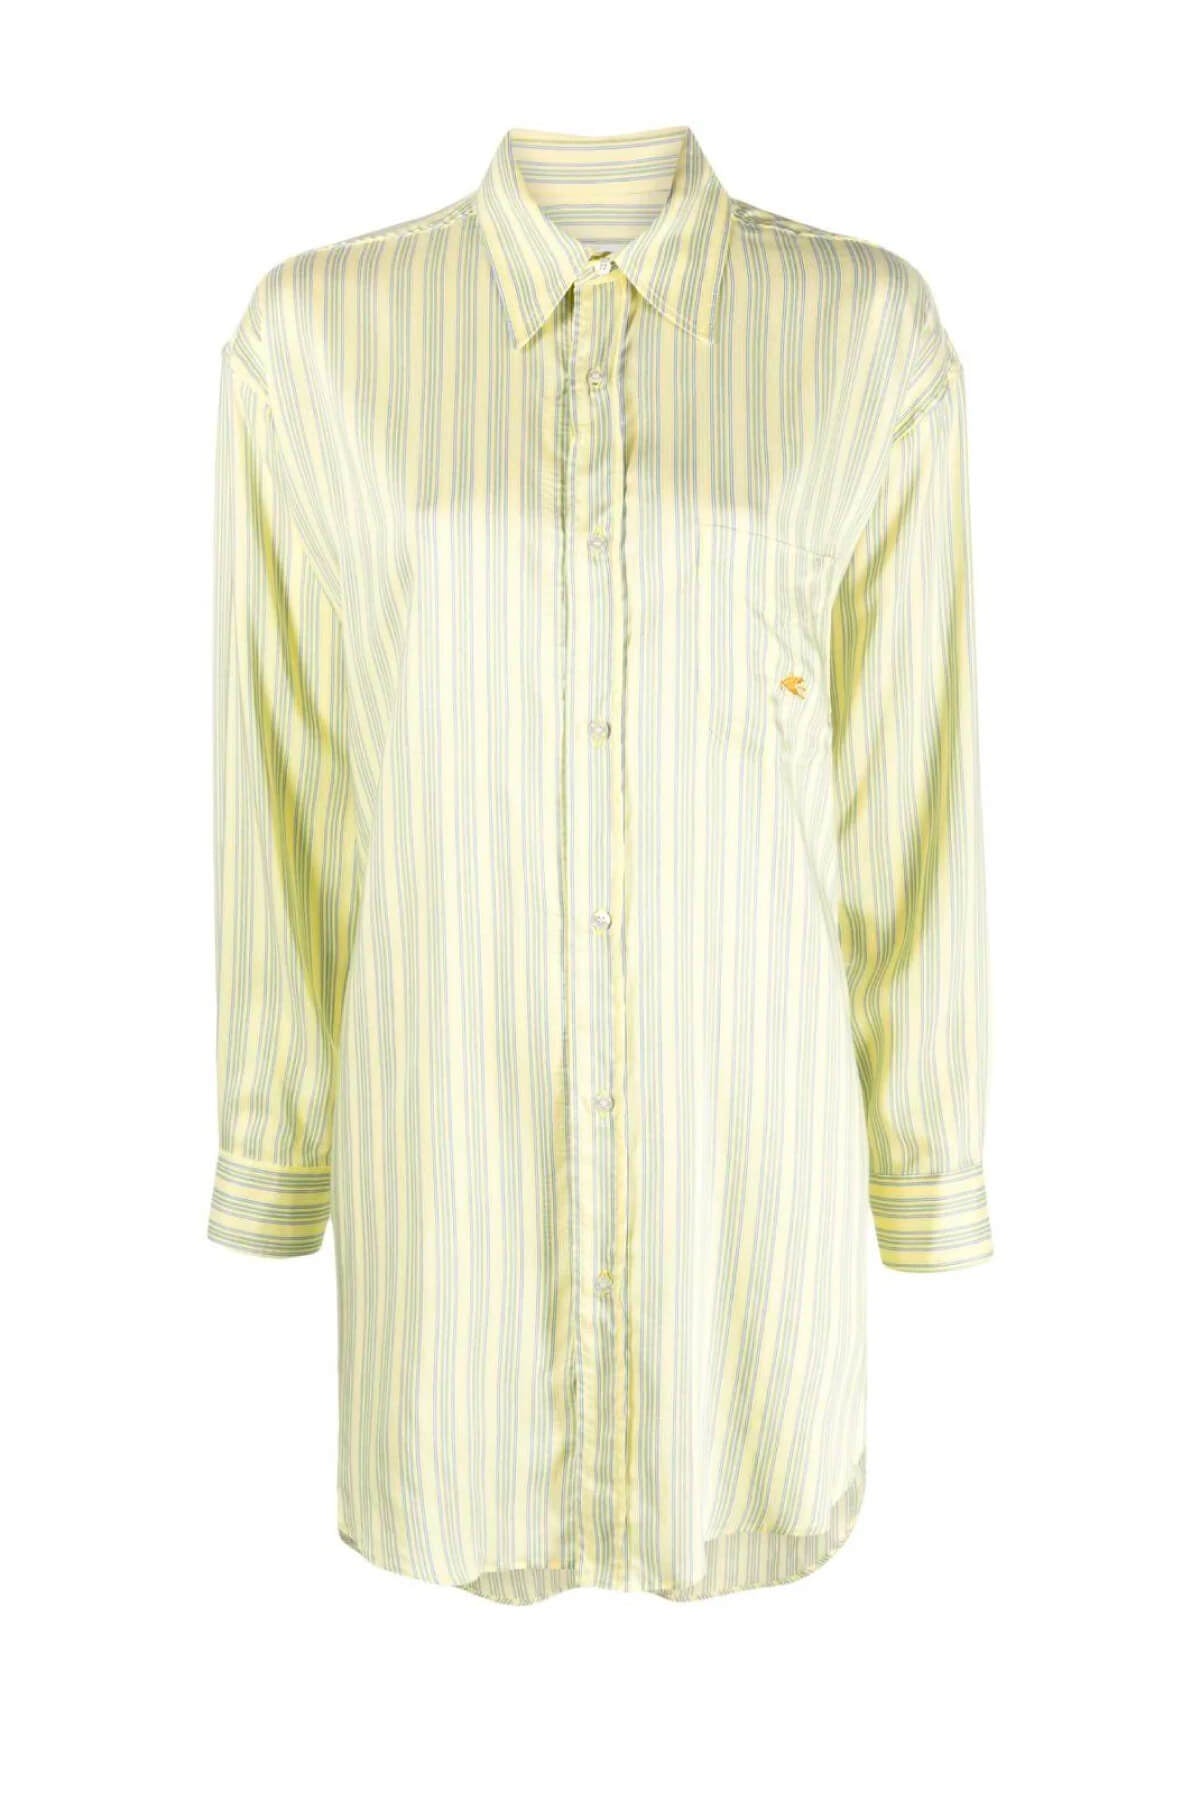 Etro Pinstripe Shirt - Yellow